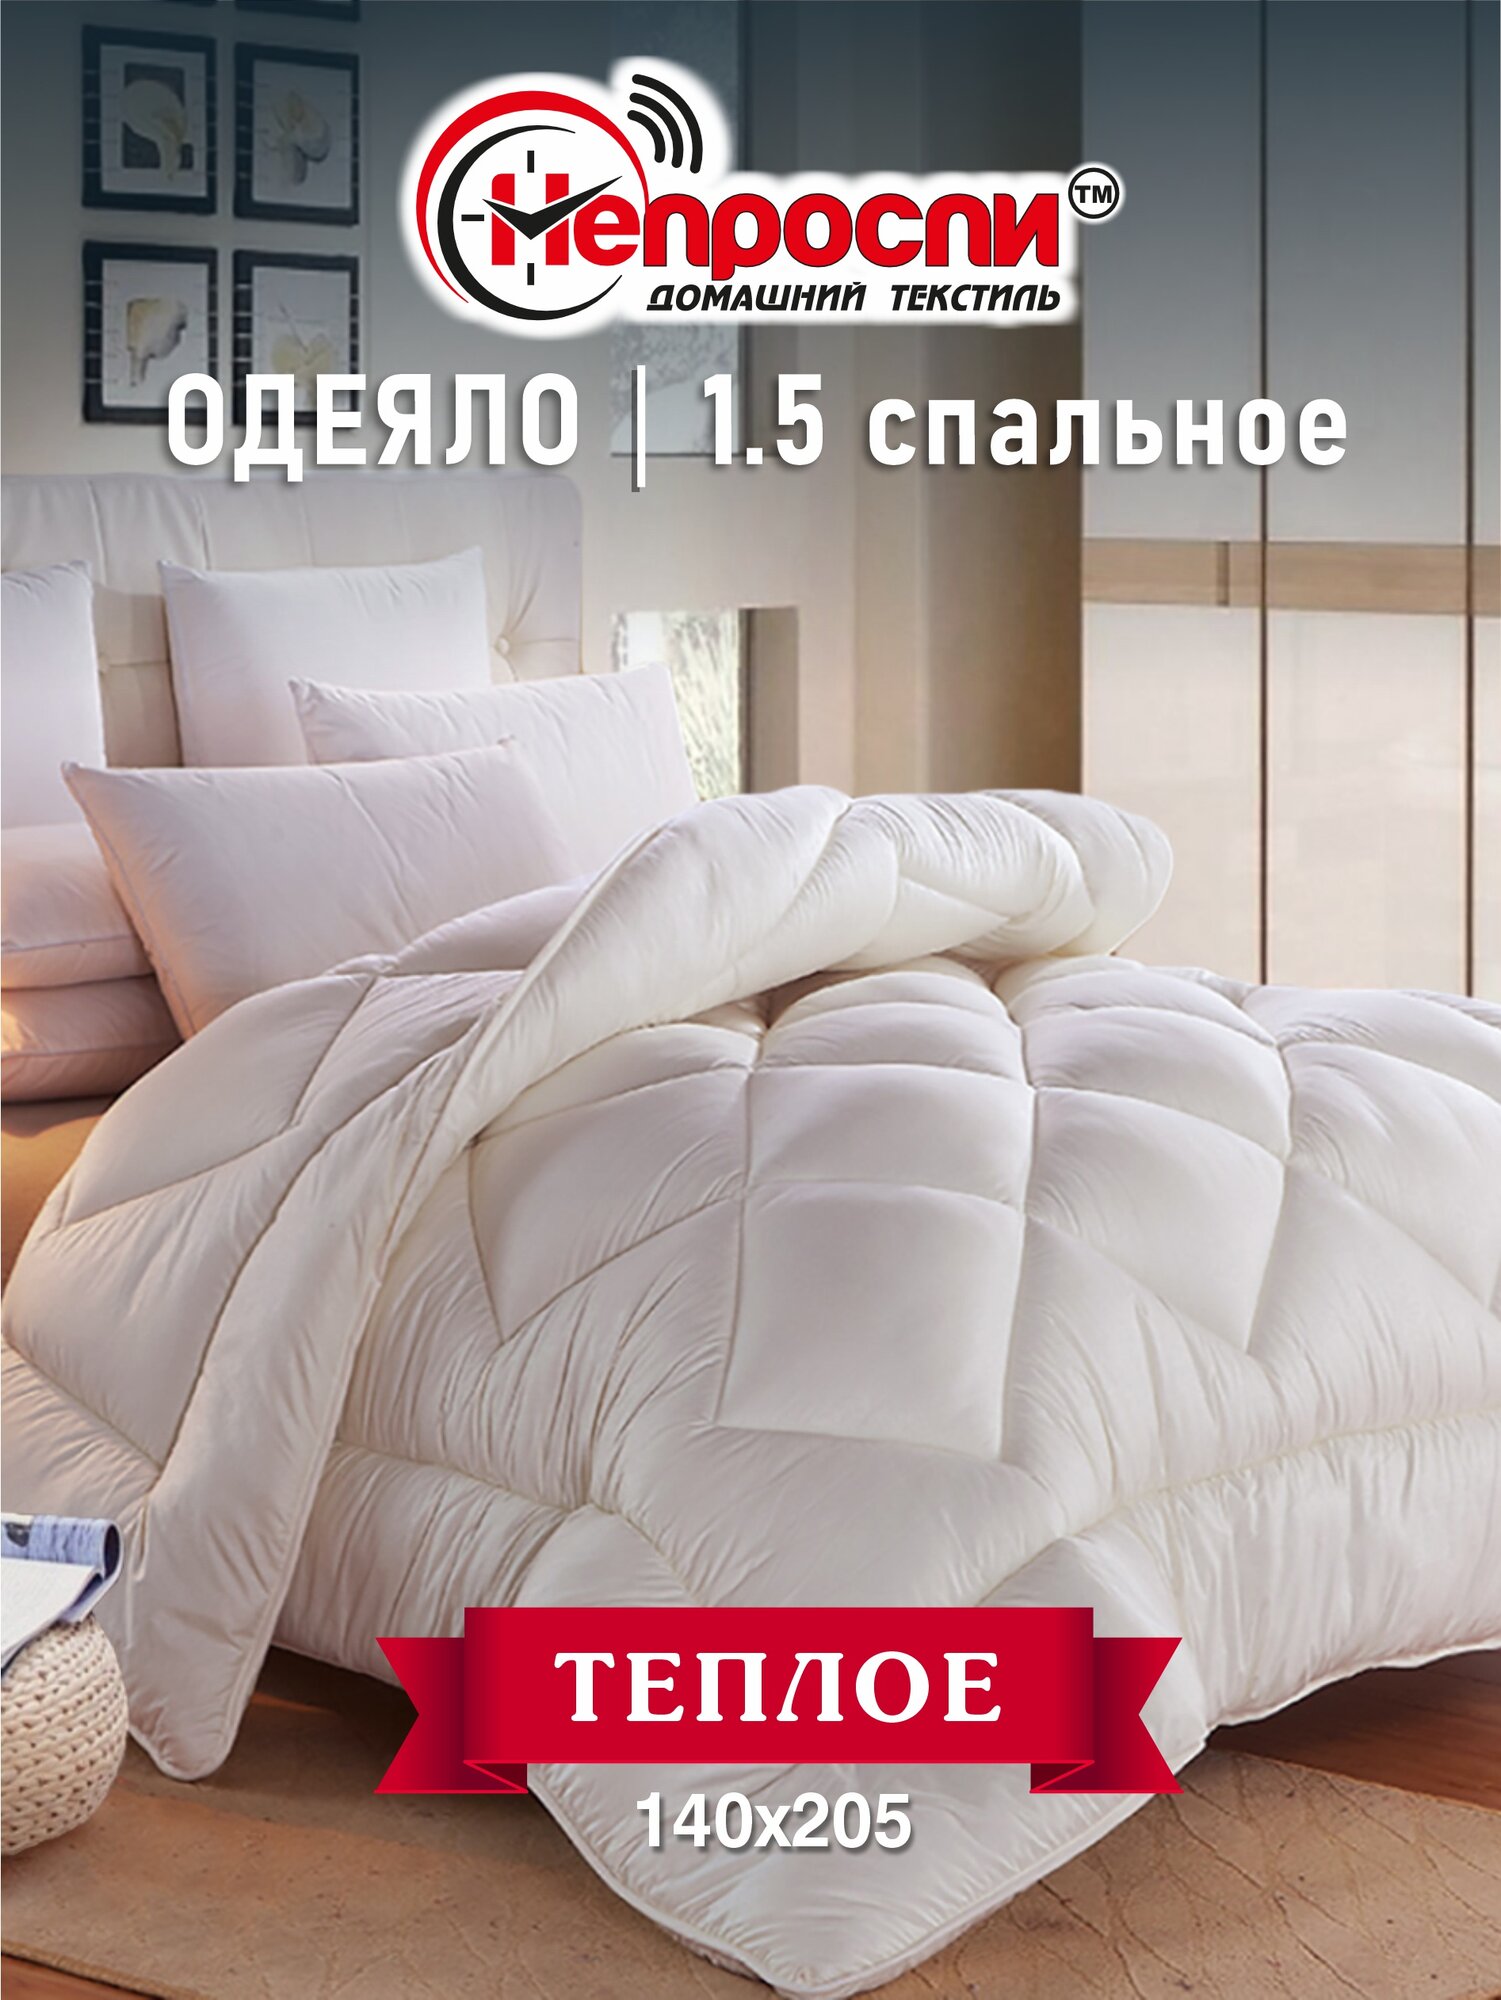 Одеяло Непроспи "Бамбук" 1,5 - спальное 140х205 см / Зимнее, пышное, теплое, стеганое одеяло из бамбукового волокна